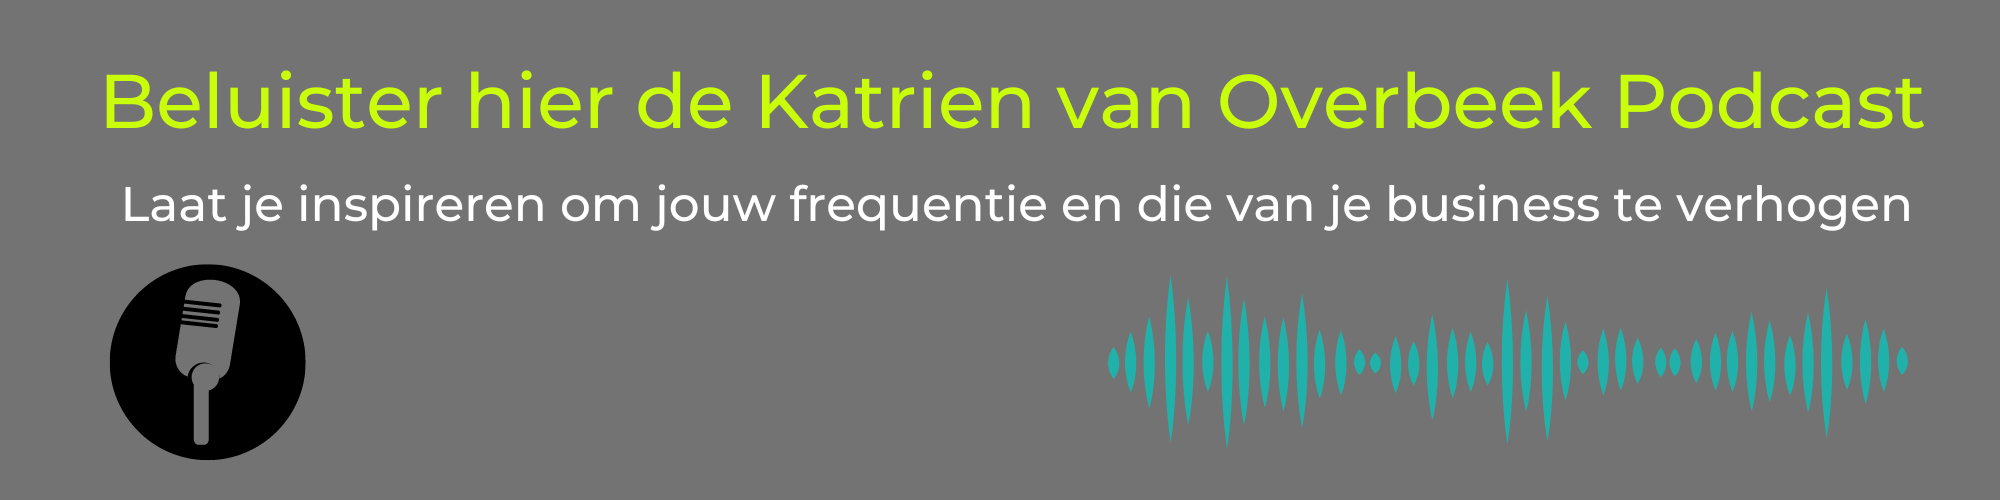 katrien van Overbeek Podcast